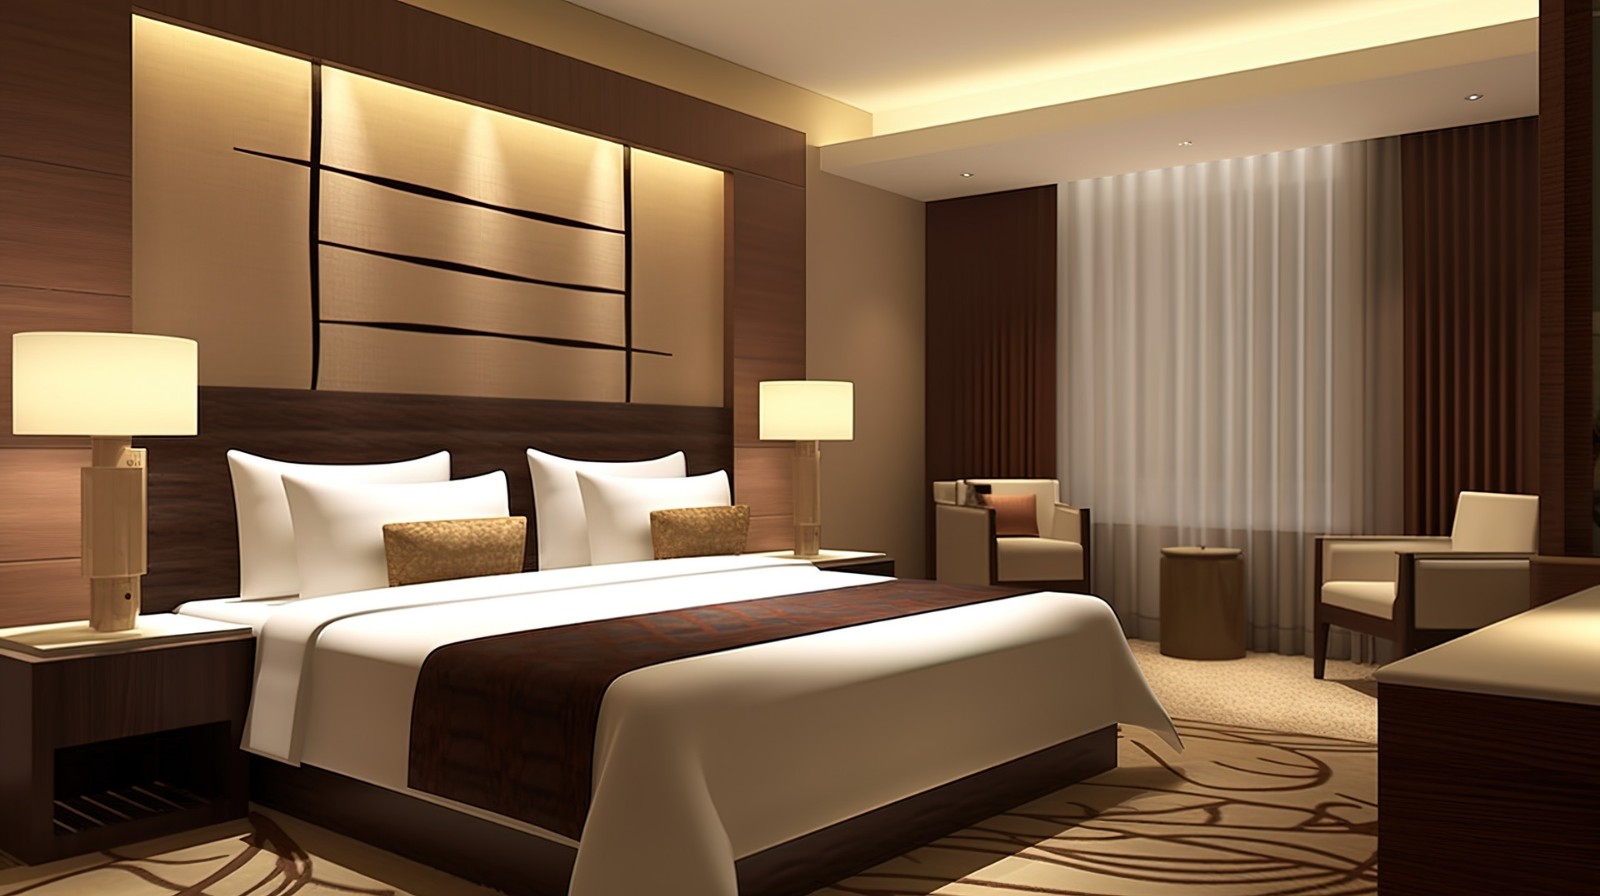 艺龙系酒店签约门店超300家 加速布局中高端住宿市场